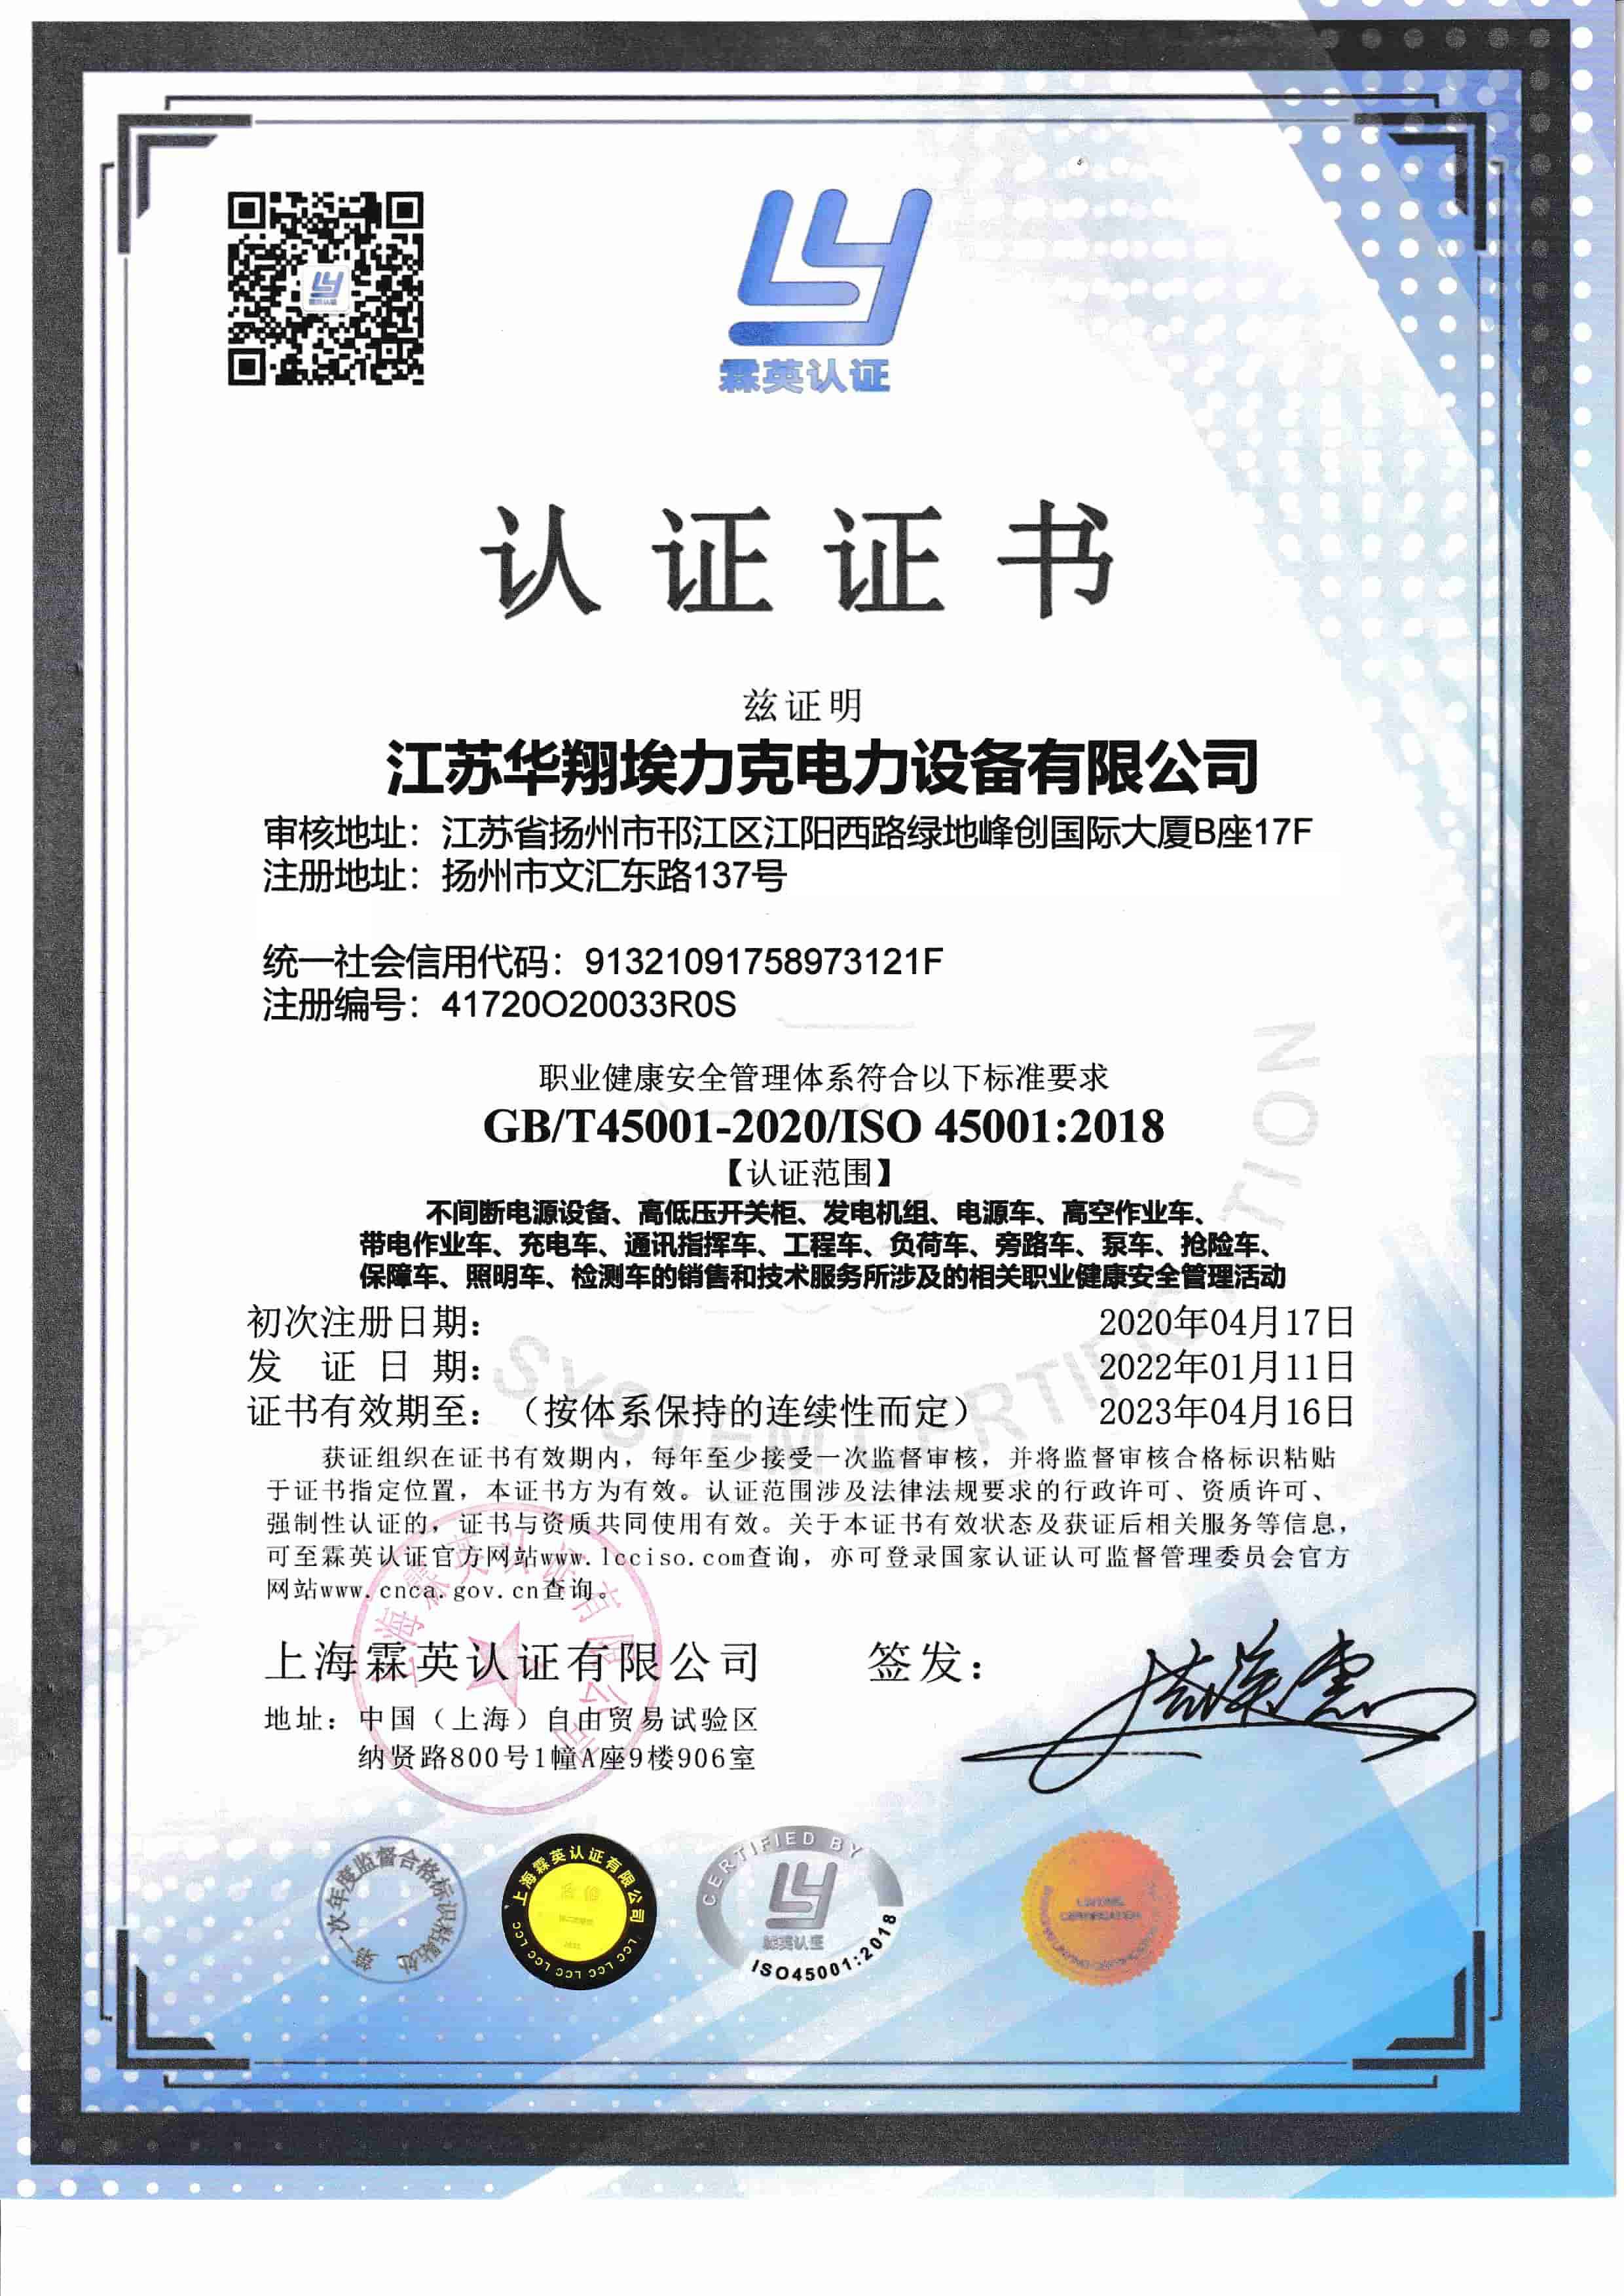 職業健康安全管理認證-中文